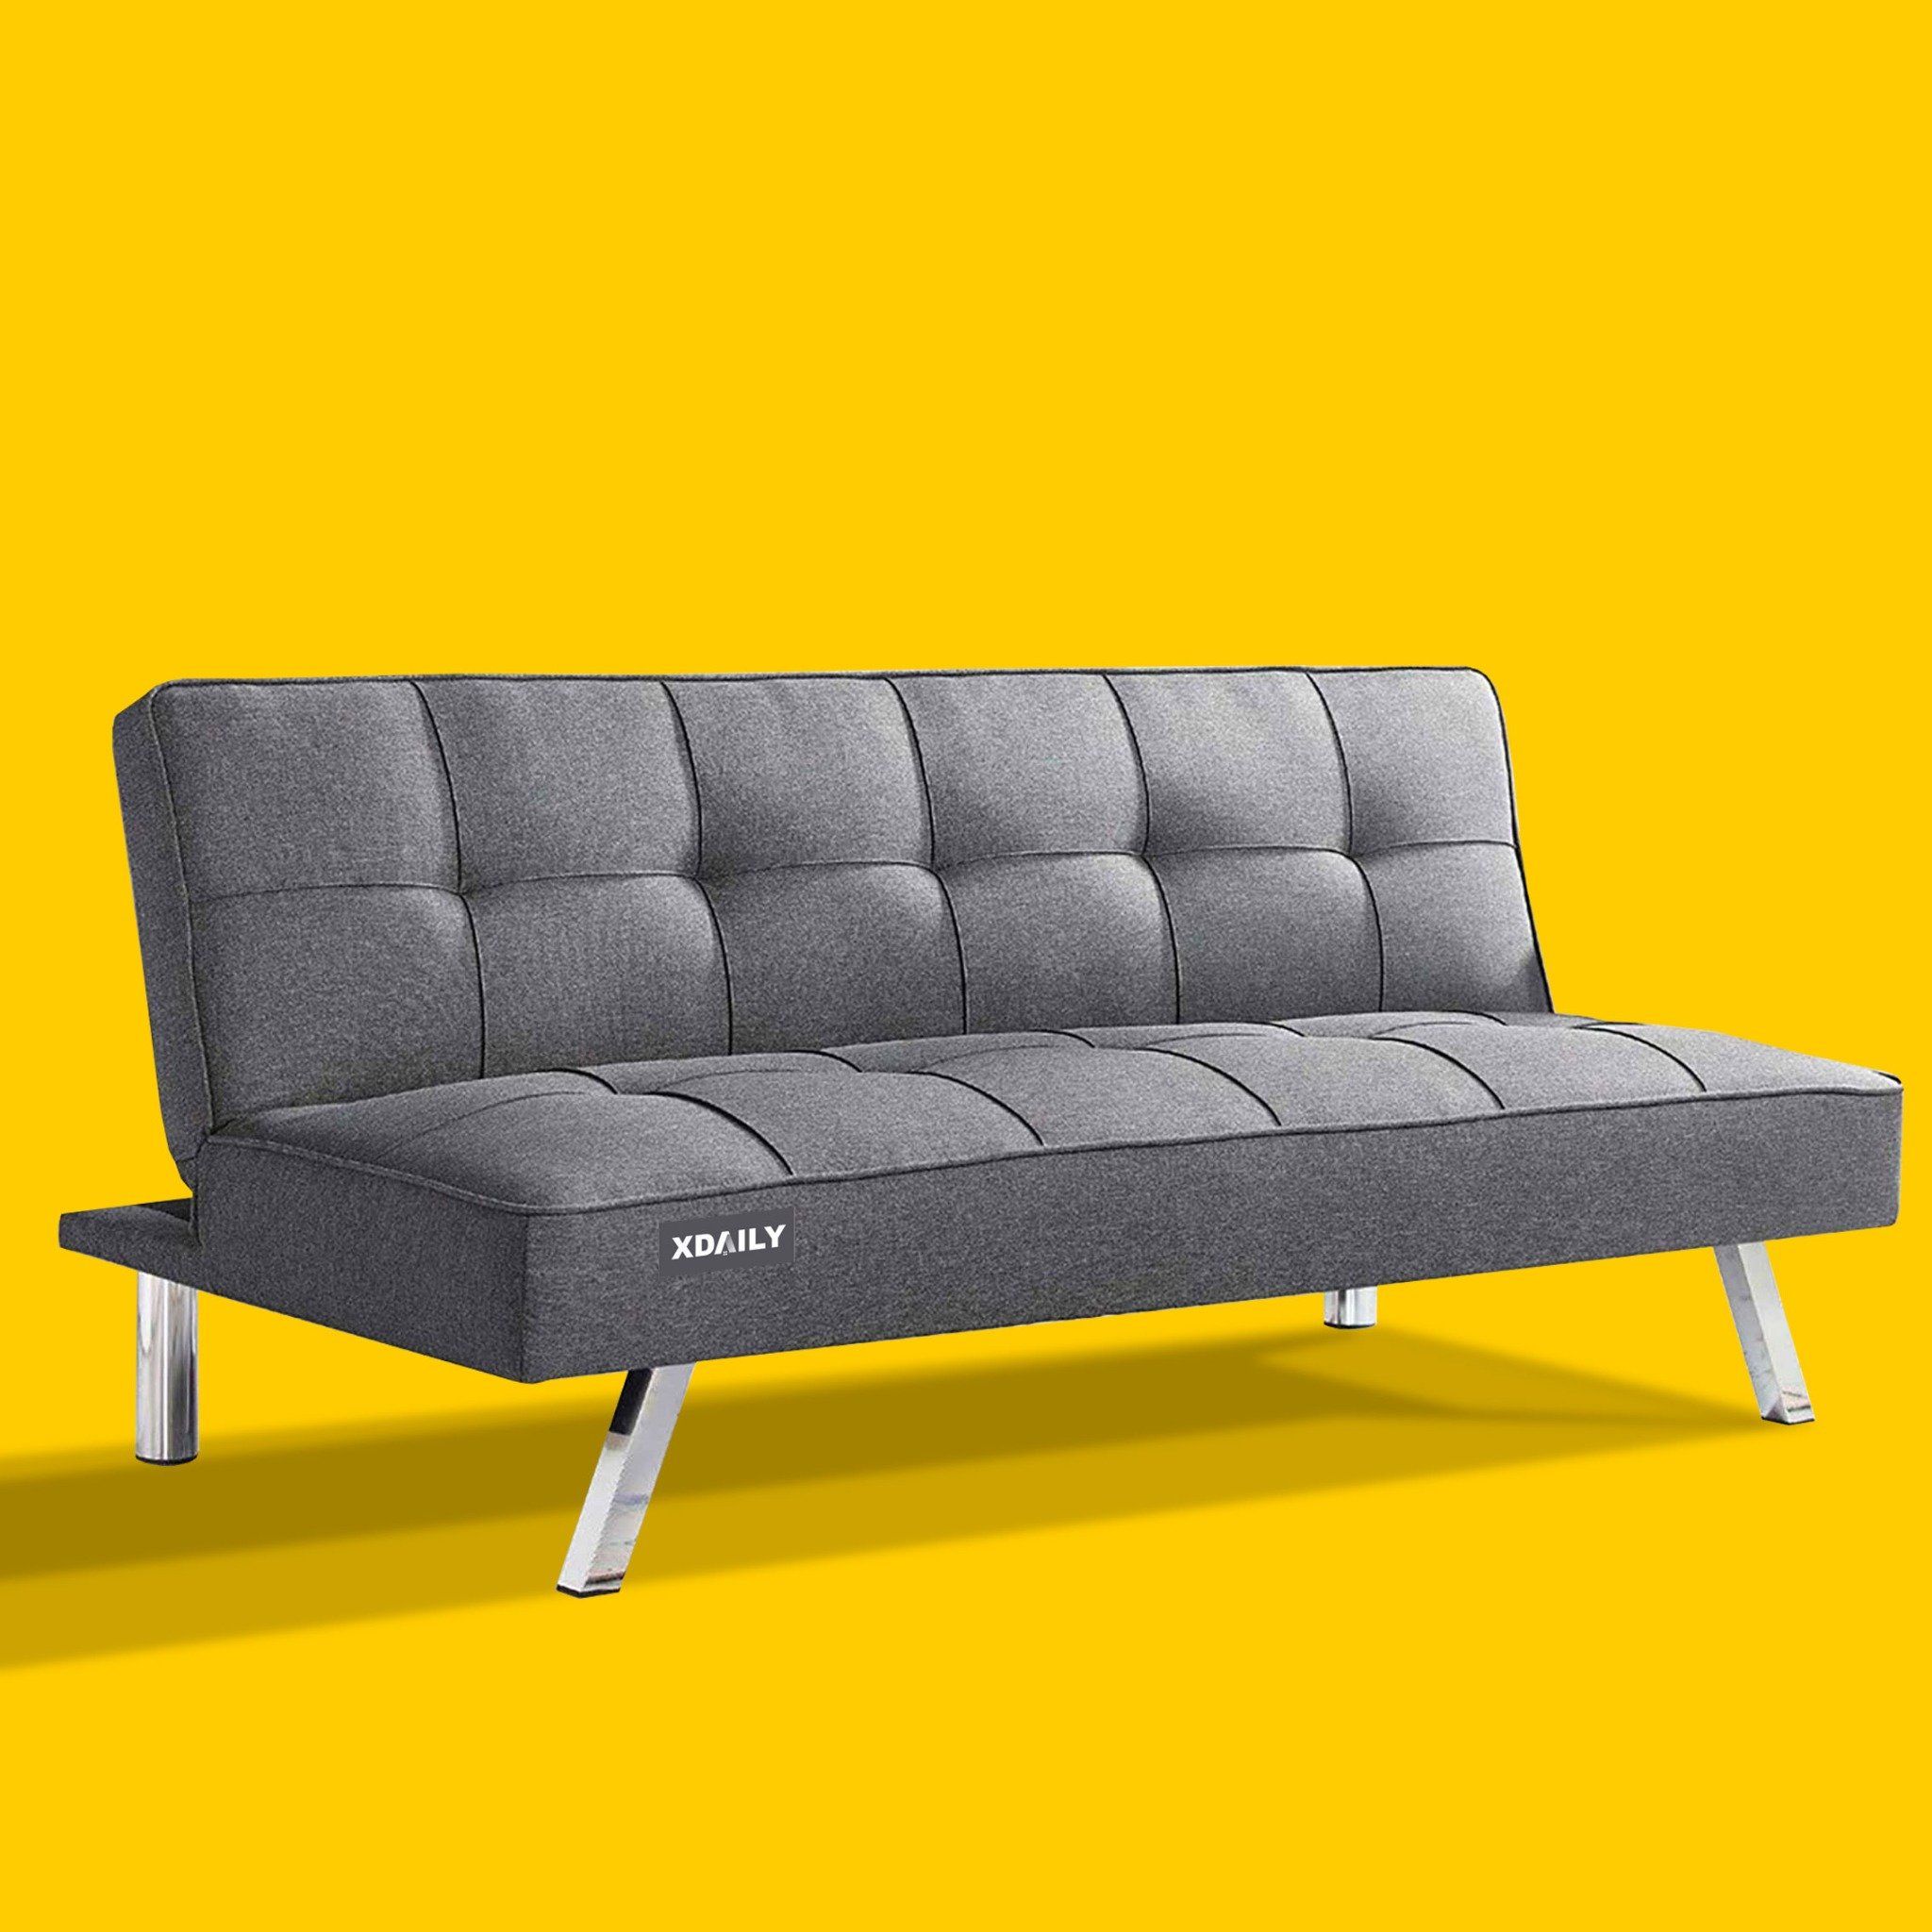 Sofa bed XDAILY - Sofa giường thông minh – XDAILY - NỘI THẤT CHO NGƯỜI TINH  TẾ